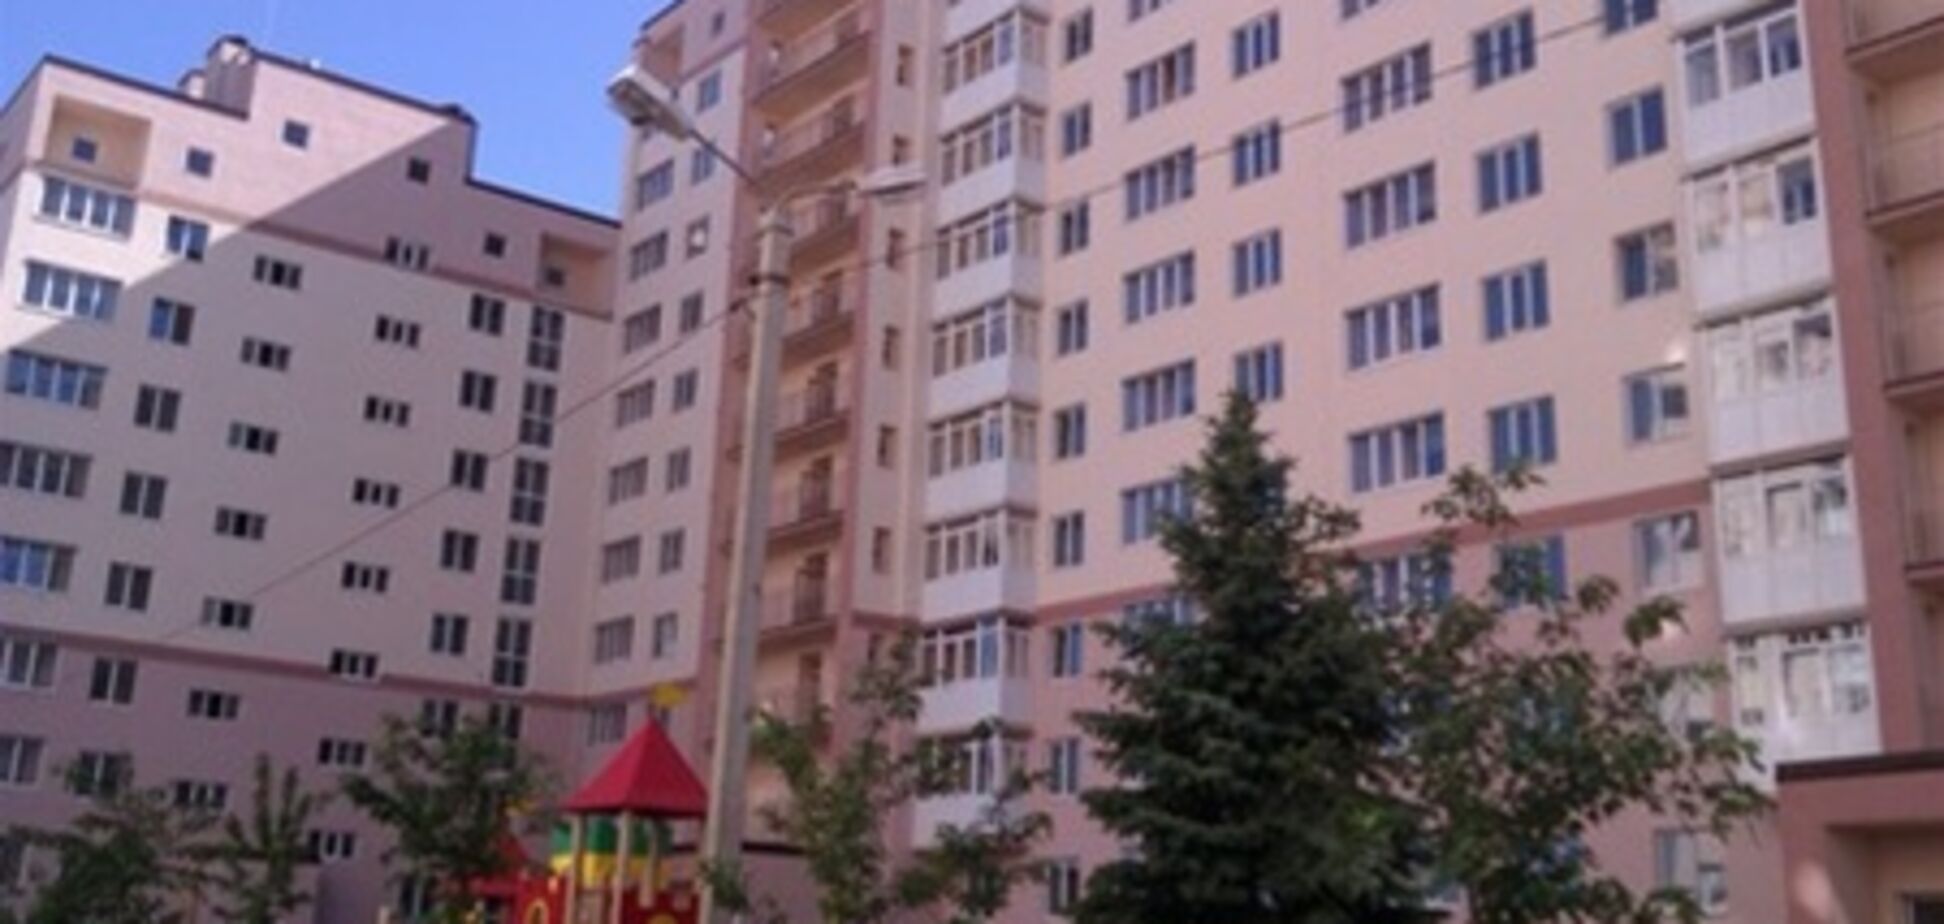 Жилье в Софиевской борщаговке становится привлекательнее для киевлян